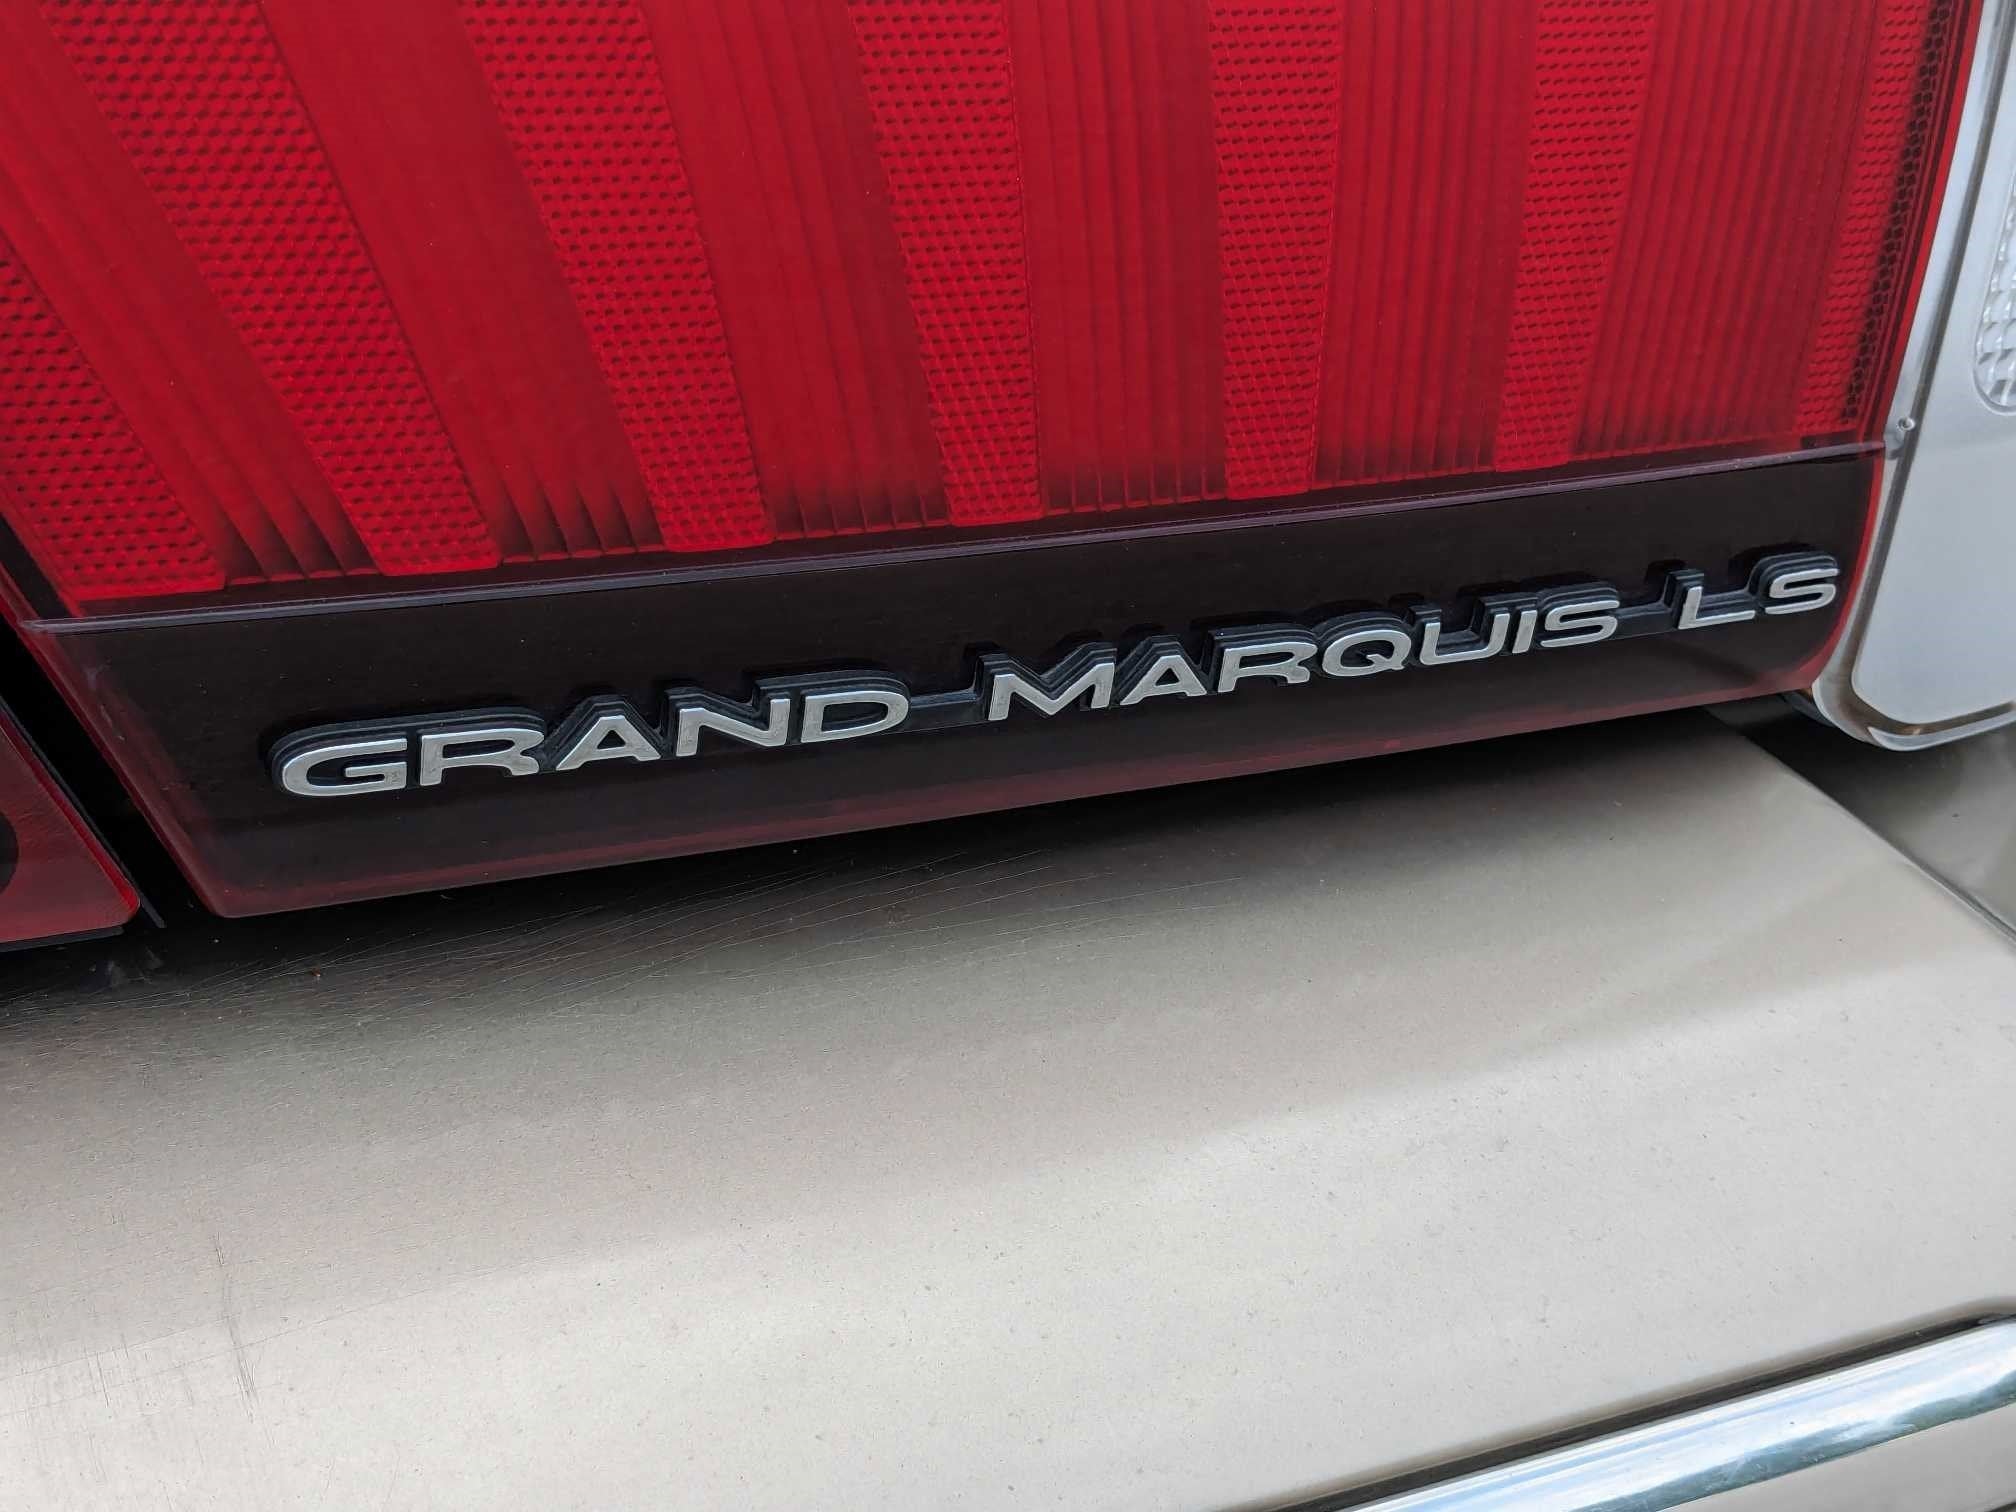 1999 Mercury Grand Marquis LS